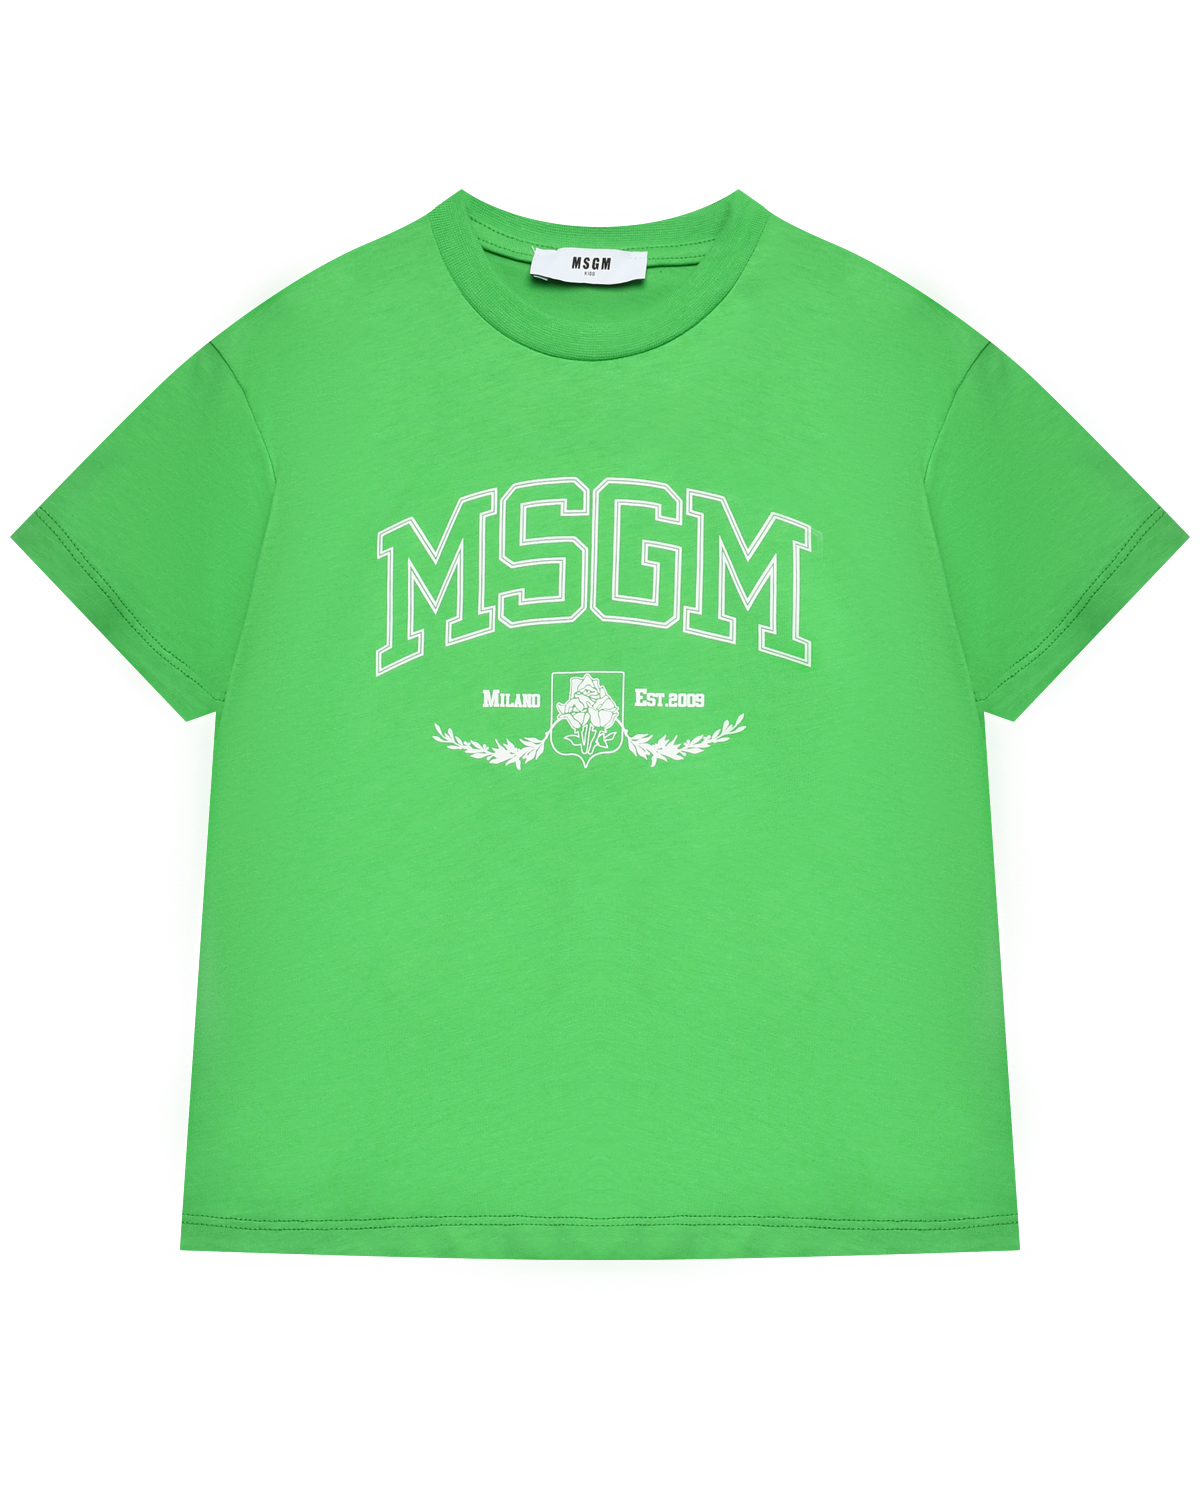 Футболка с логотипом, зеленая MSGM футболка с логотипом зеленая msgm